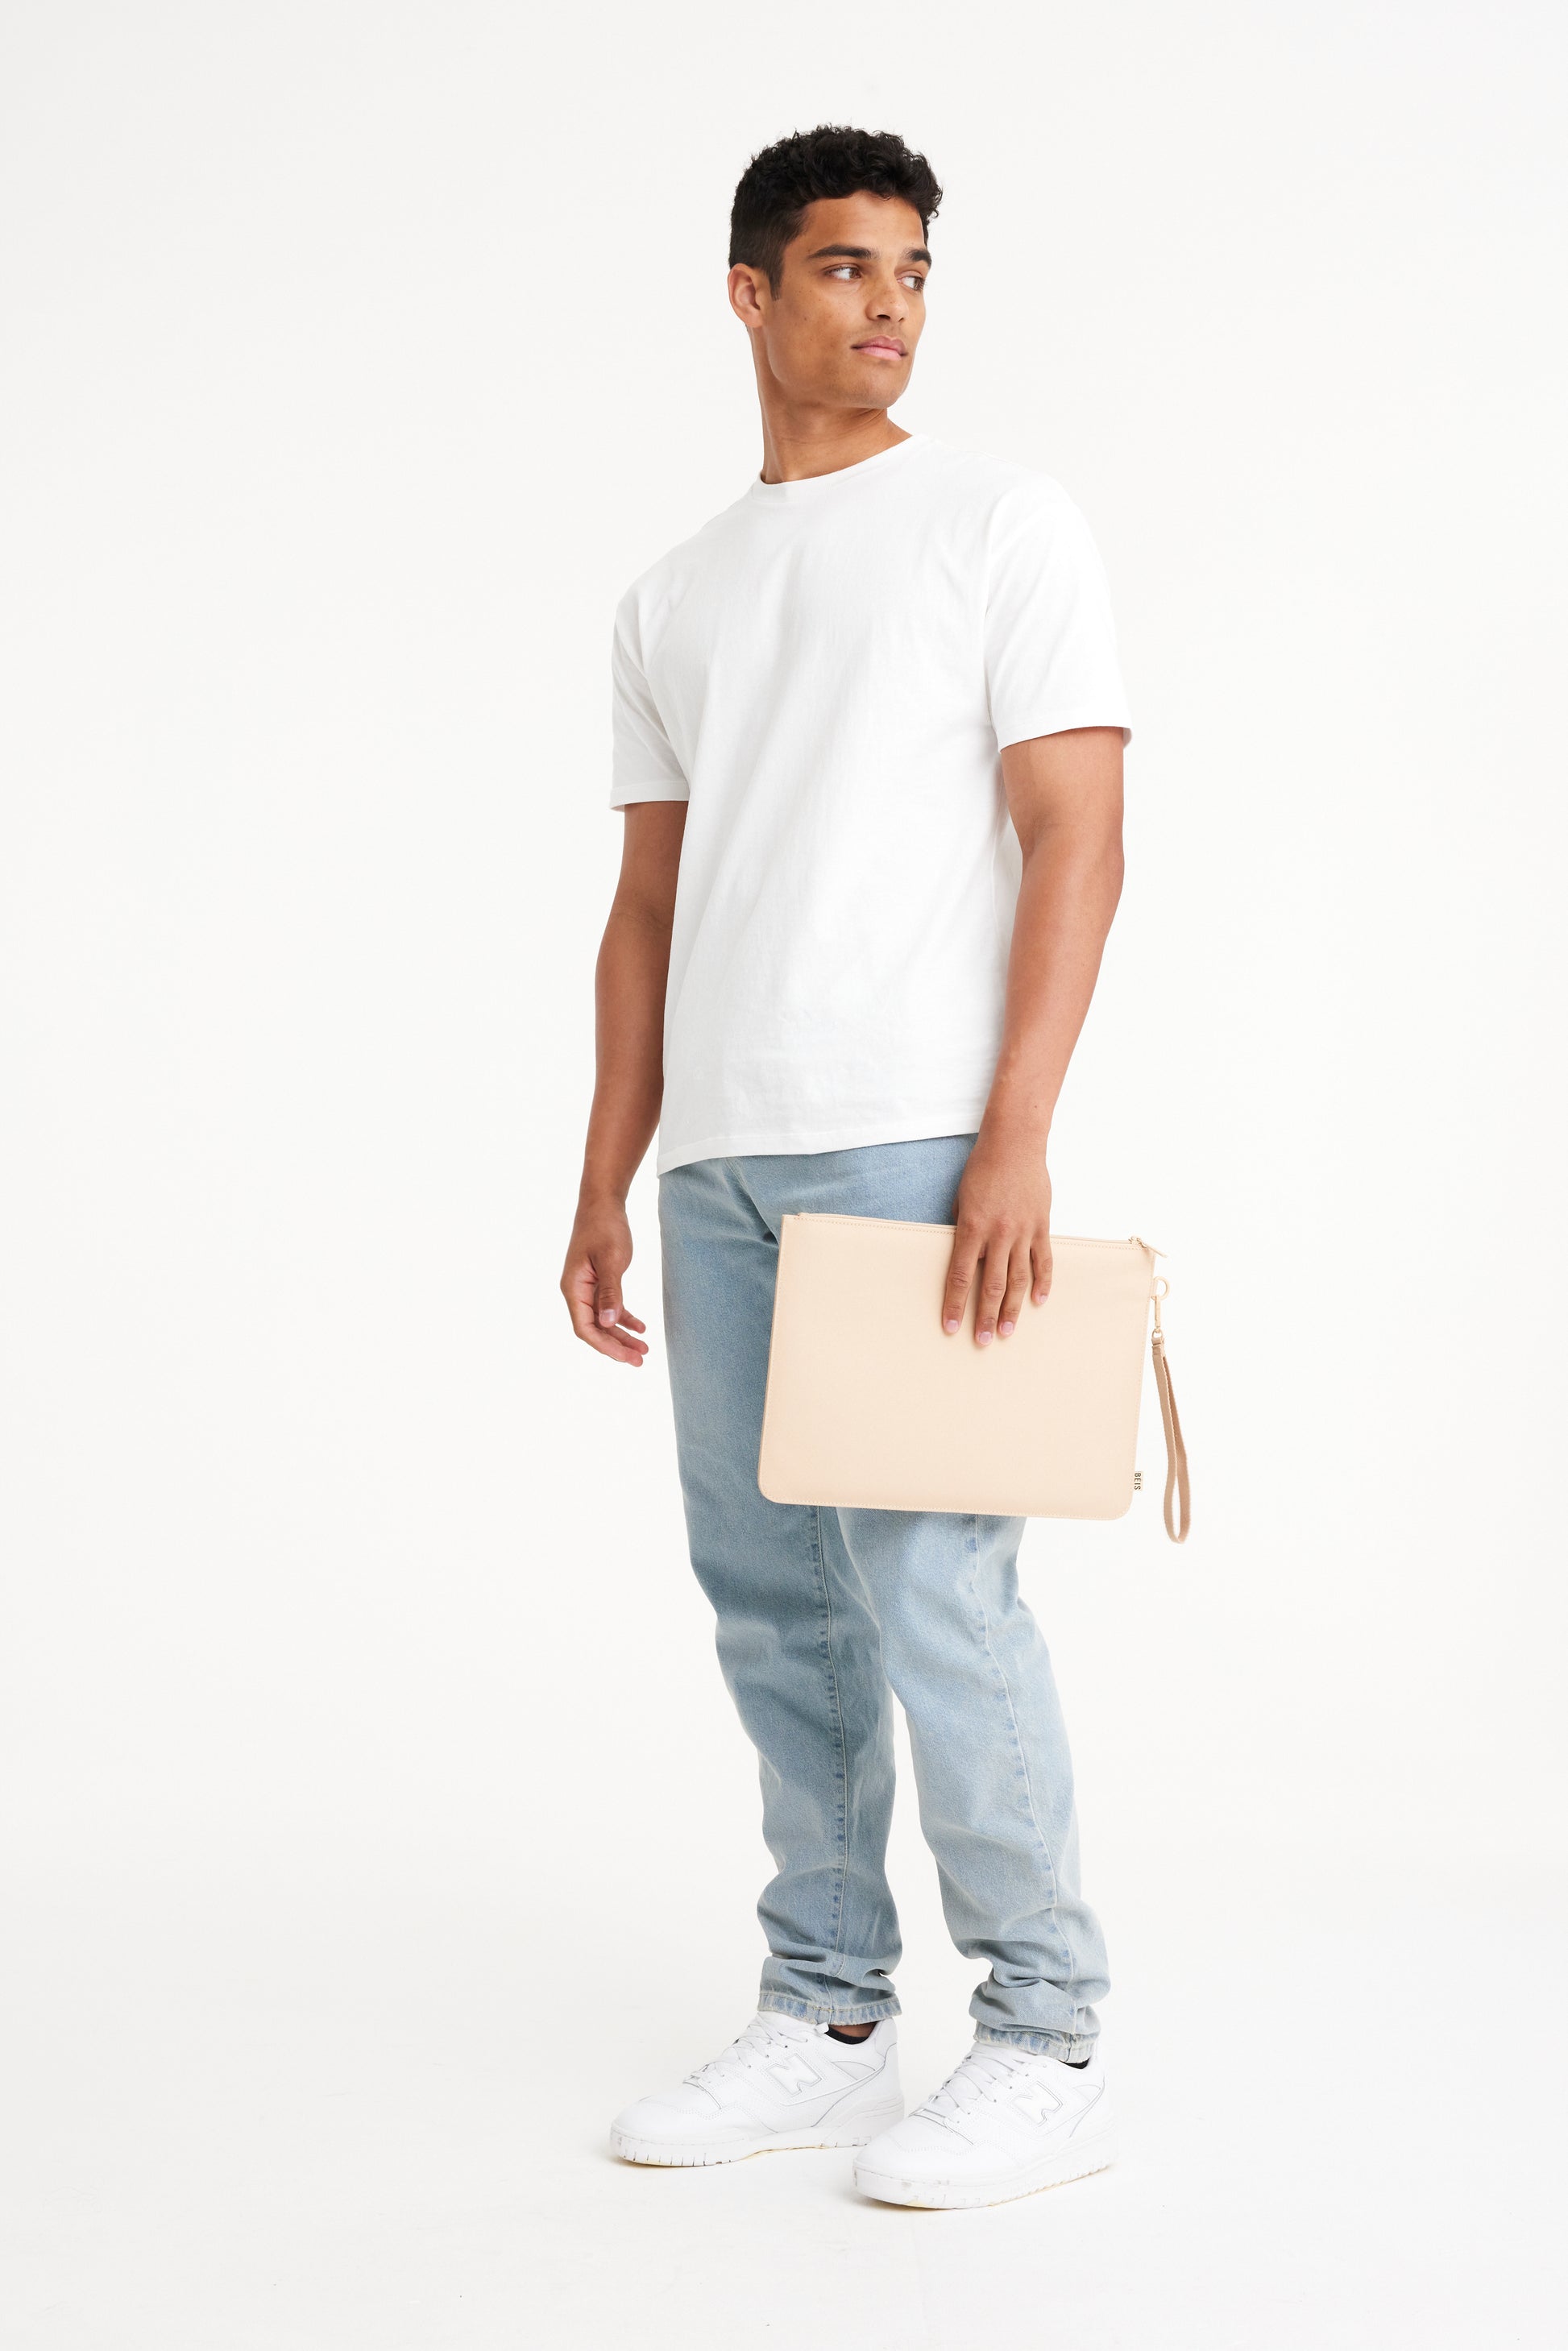 Beige Check Laptop Sleeve Liner Bag 11 13 Inch Case for 